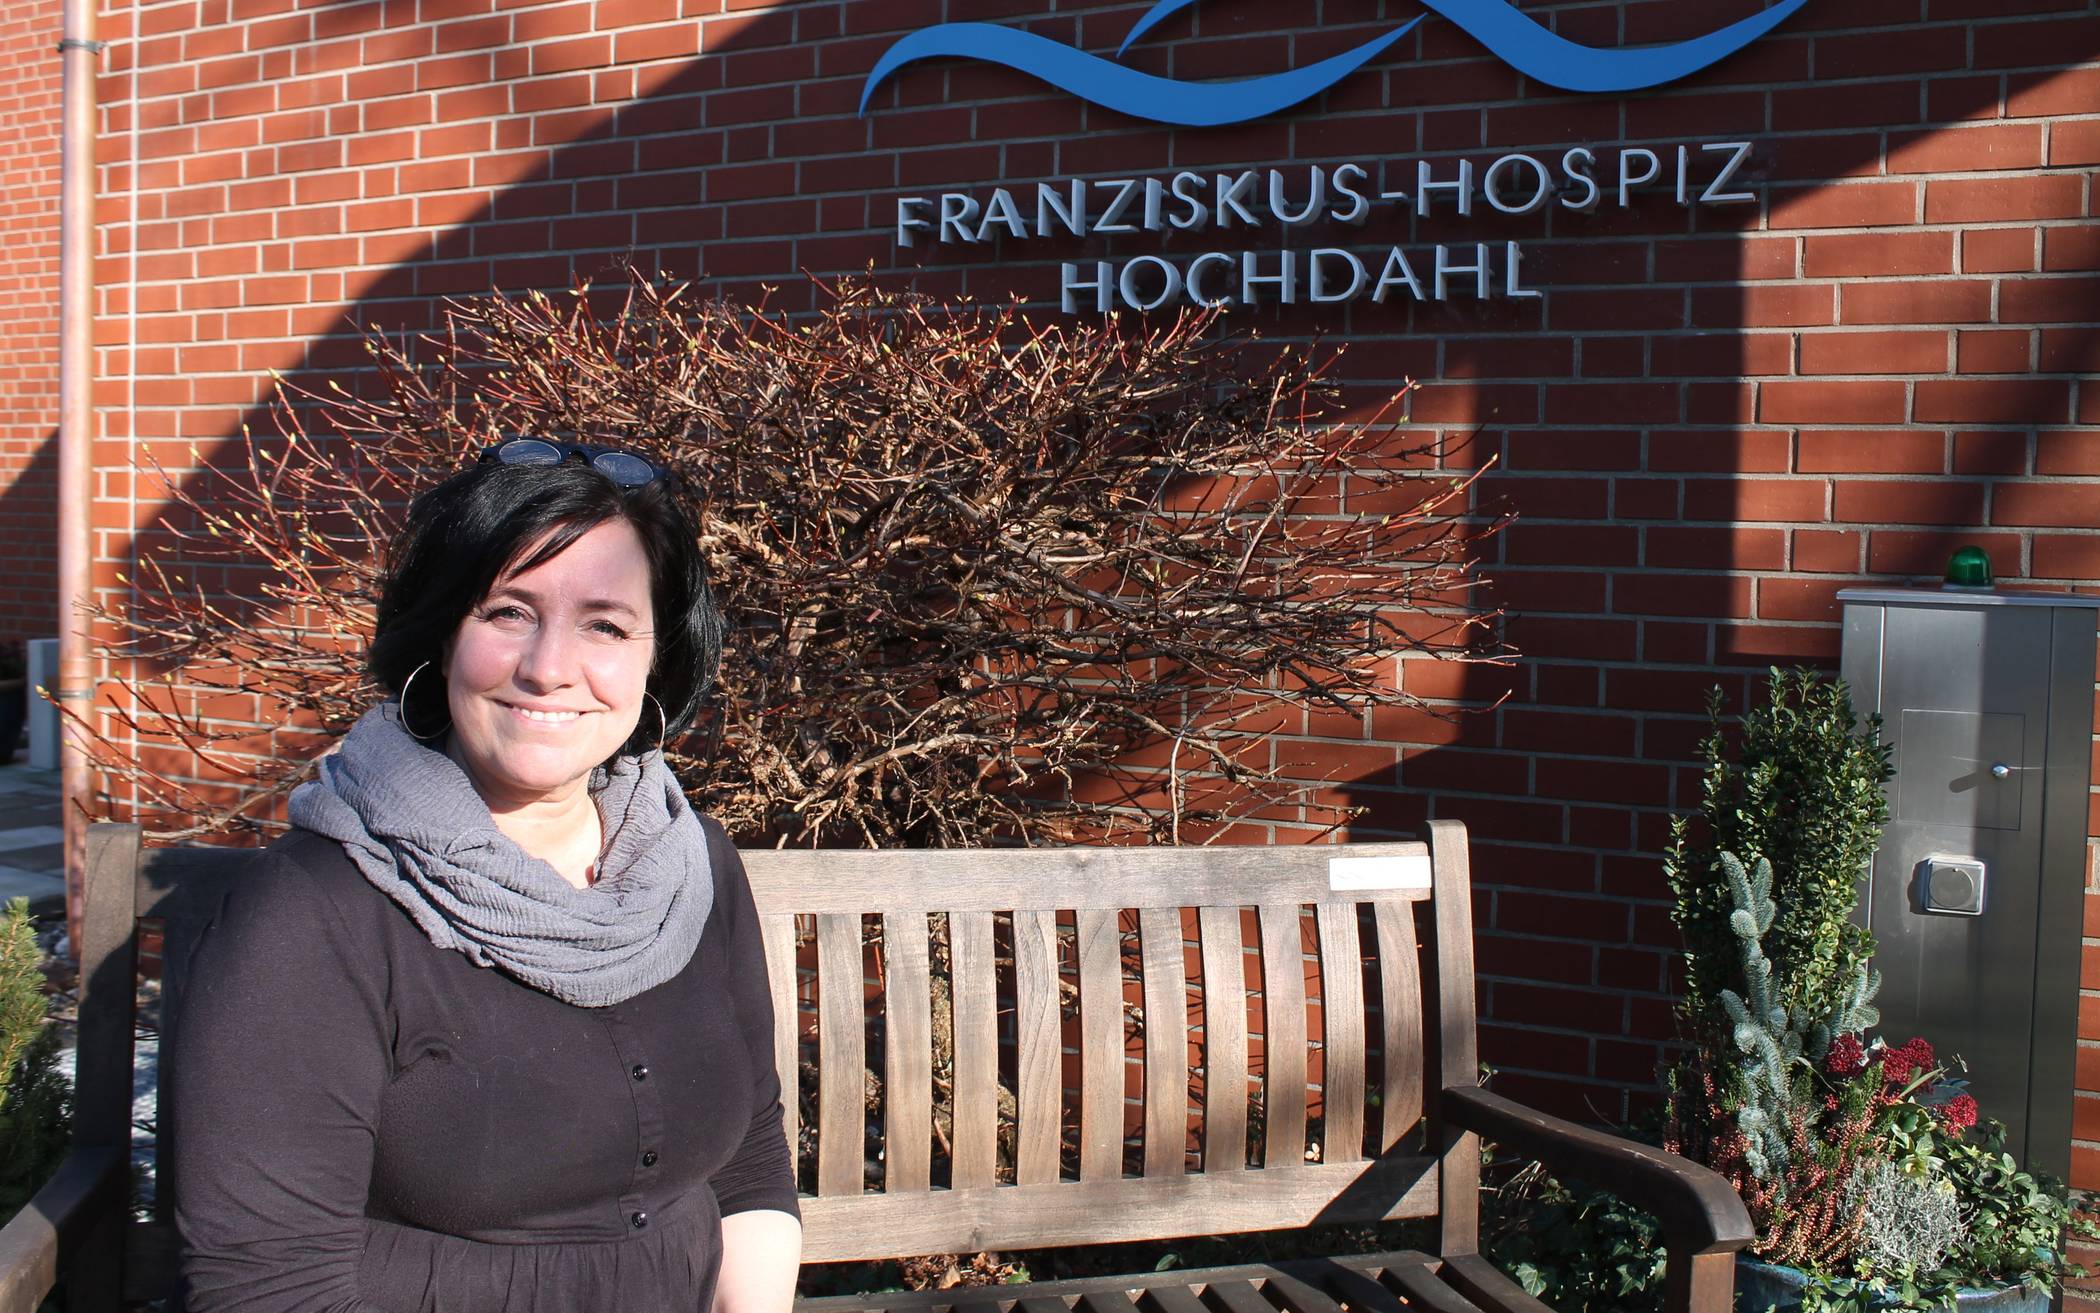  Silke Kirchmann, Leiterin des Franzsiskus-Hospizes in Hochdahl. 